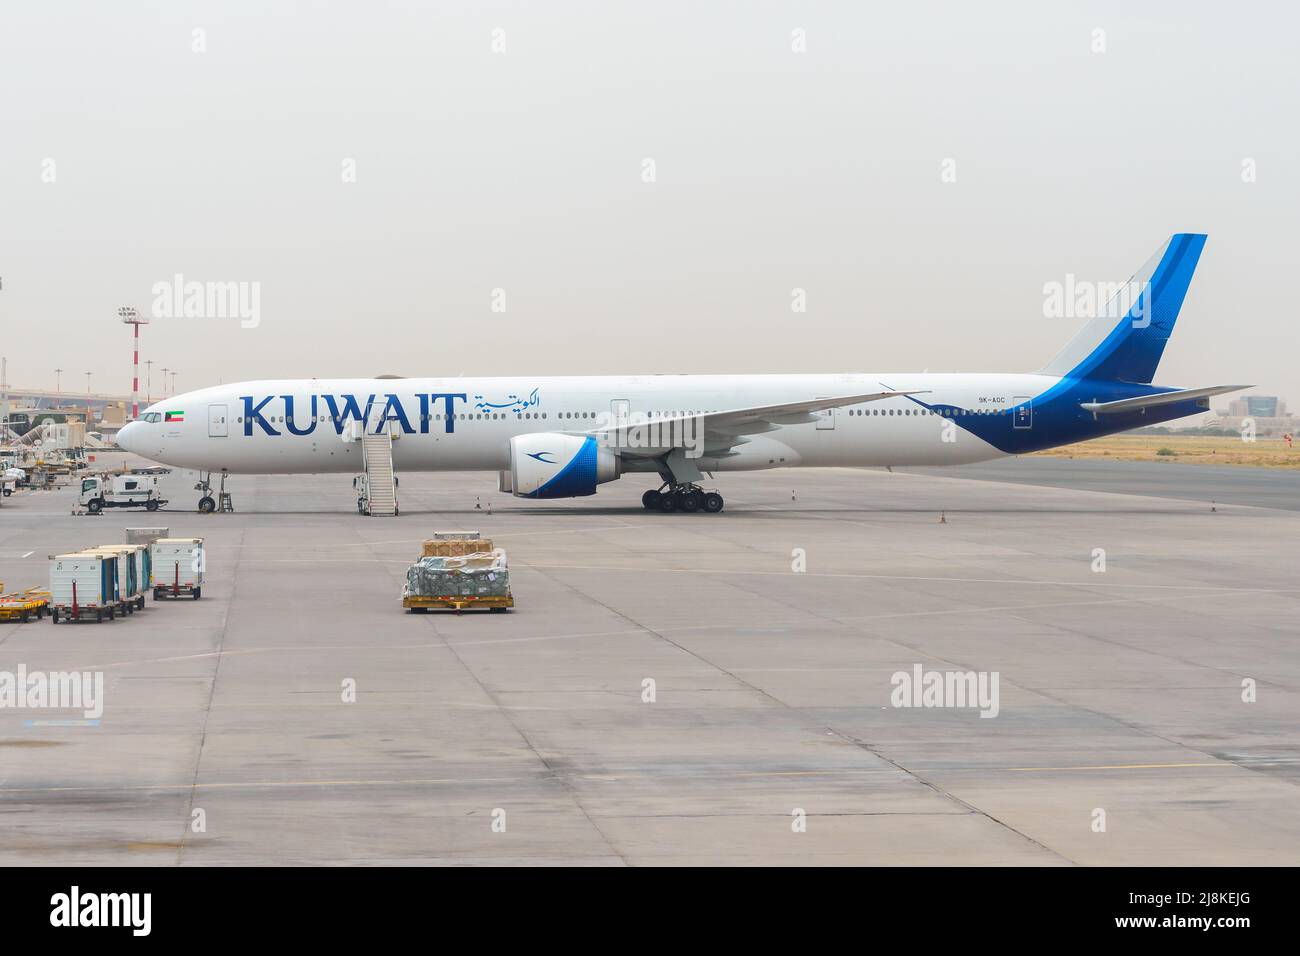 Kuwait Airways Boeing 777-300ER am Flughafen Kuwait. Flugzeug der Kuwait Airline Boeing Flugzeug. Stockfoto